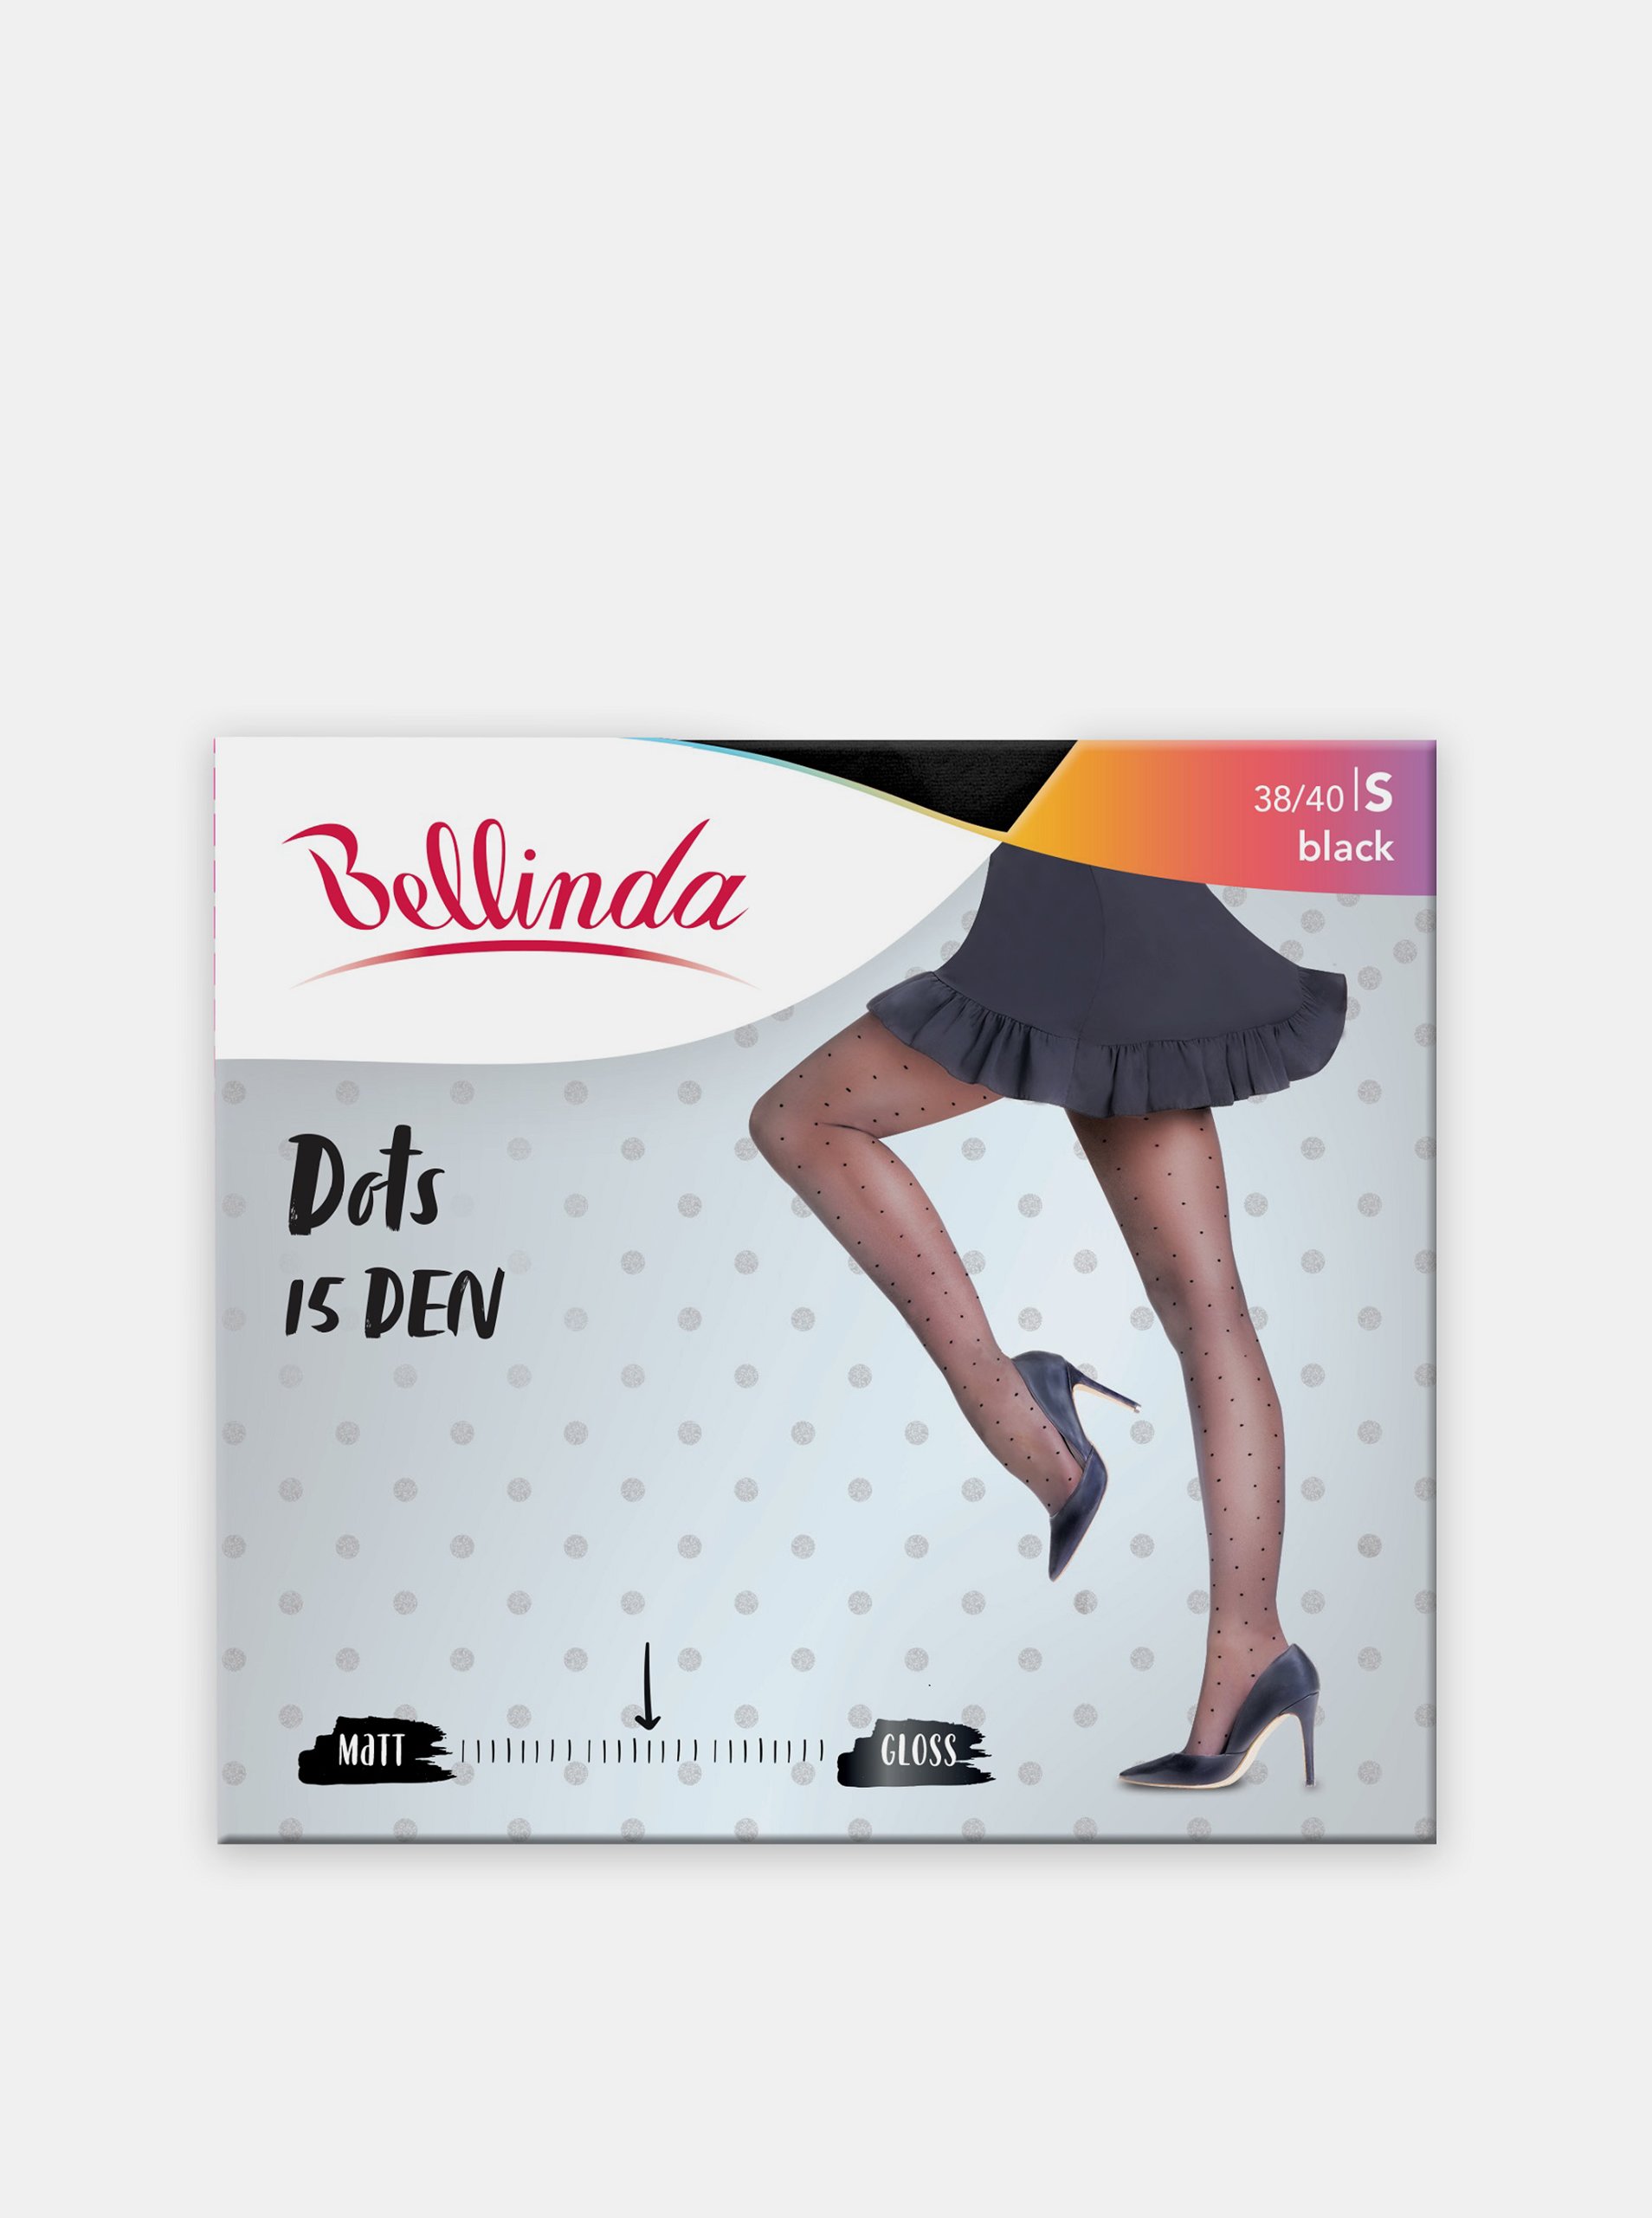 E-shop Černé dámské puntíkované punčochové kalhoty Bellinda DOTS 15 DEN